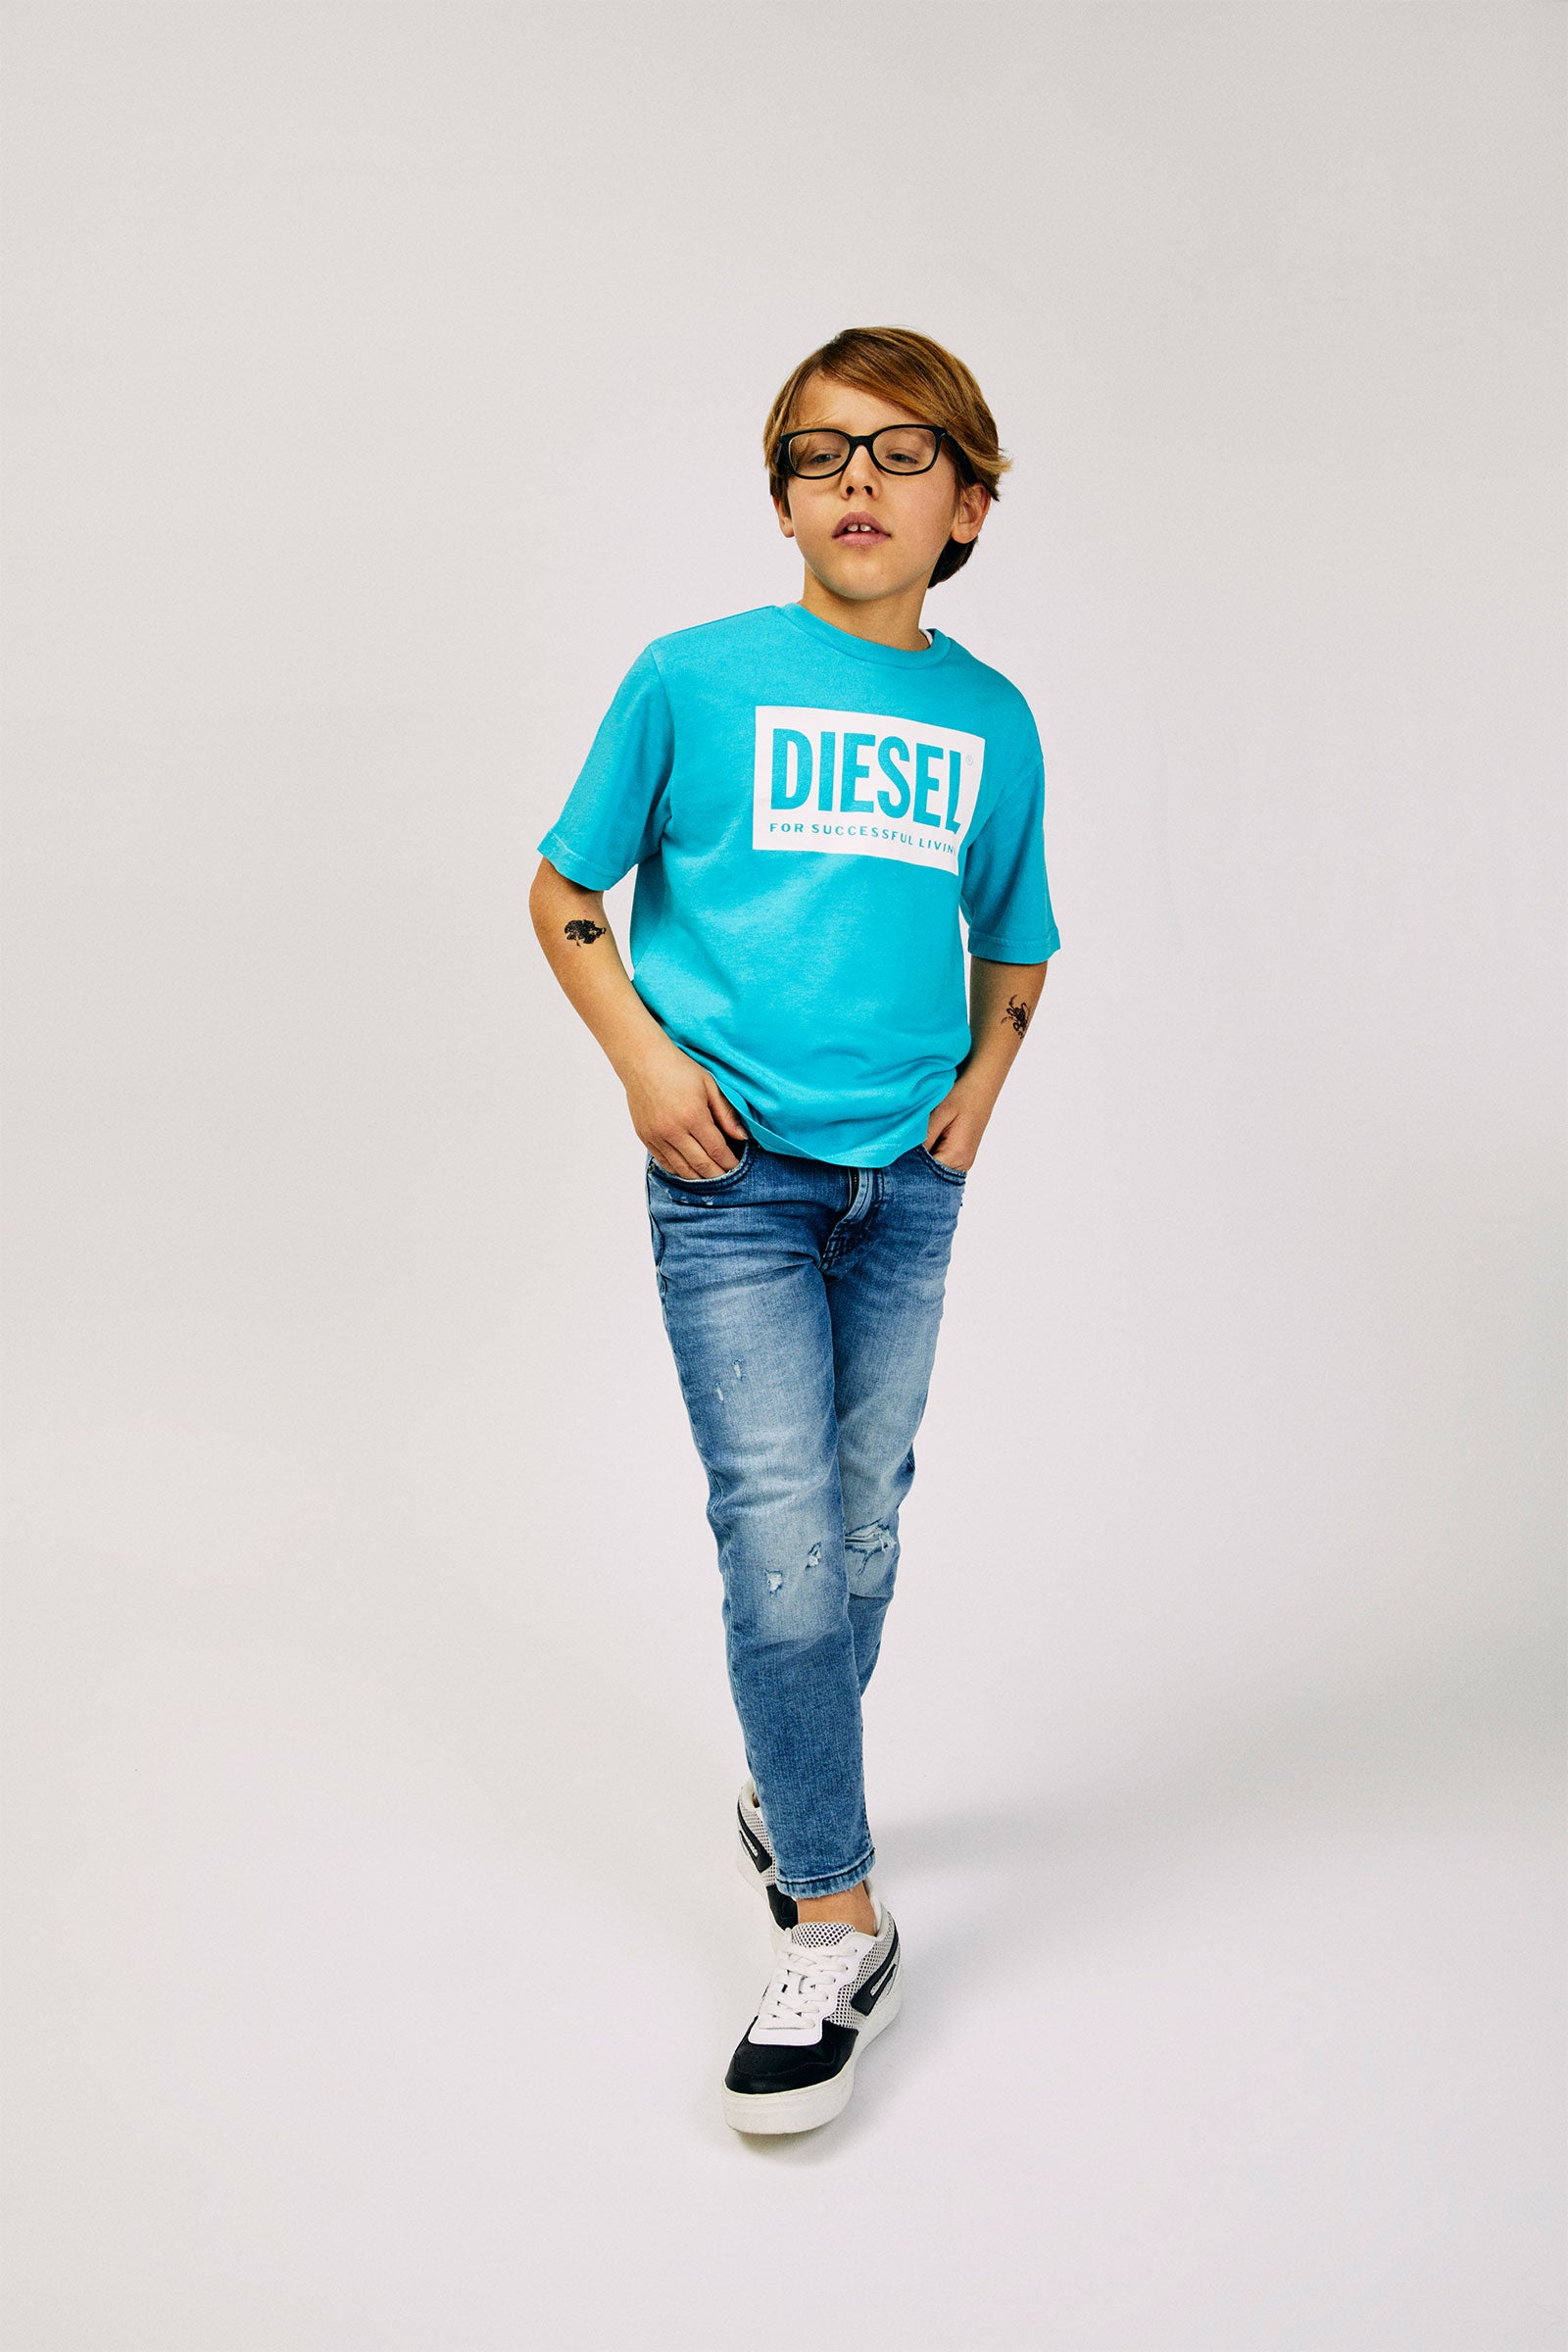 DIESEL t-shirt Blue for boys